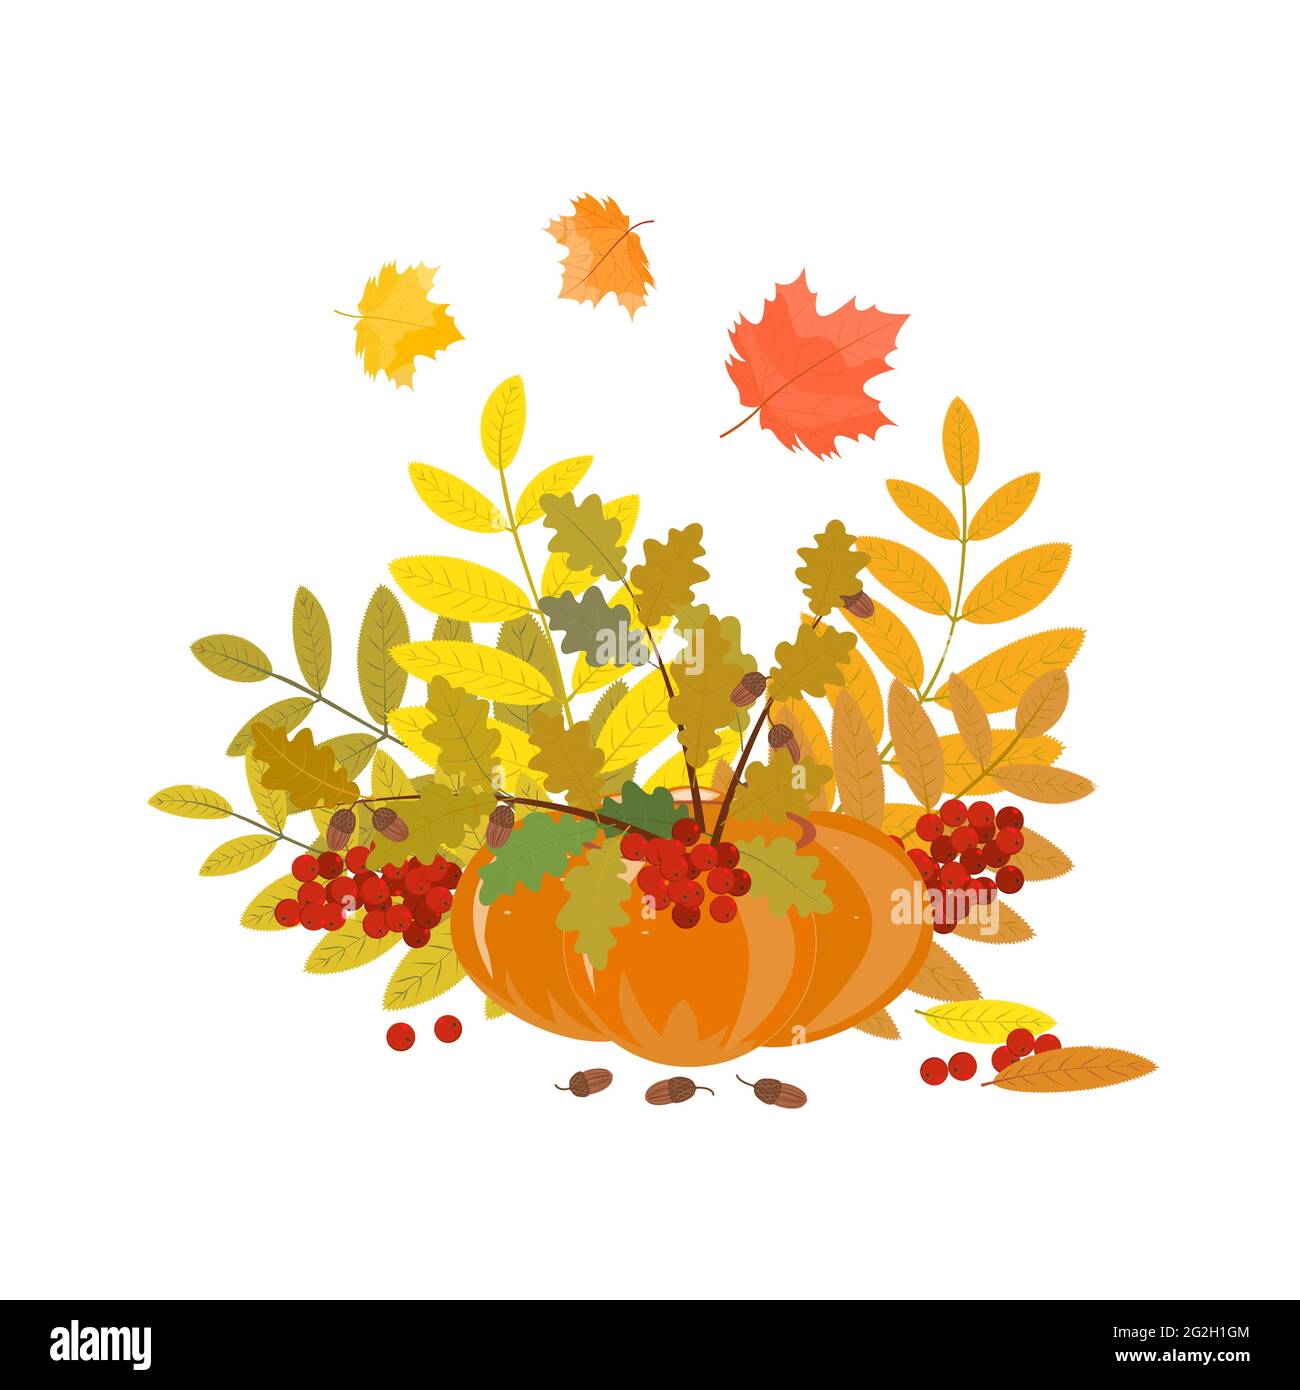 Herbstlicher Strauß von Ebereschen, Eiche, Ahornblättern und Eicheln in einem Kürbis. Ein Element der Innenarchitektur, Postkarte, Flyer oder Poster. Vektorgrafik Stock Vektor